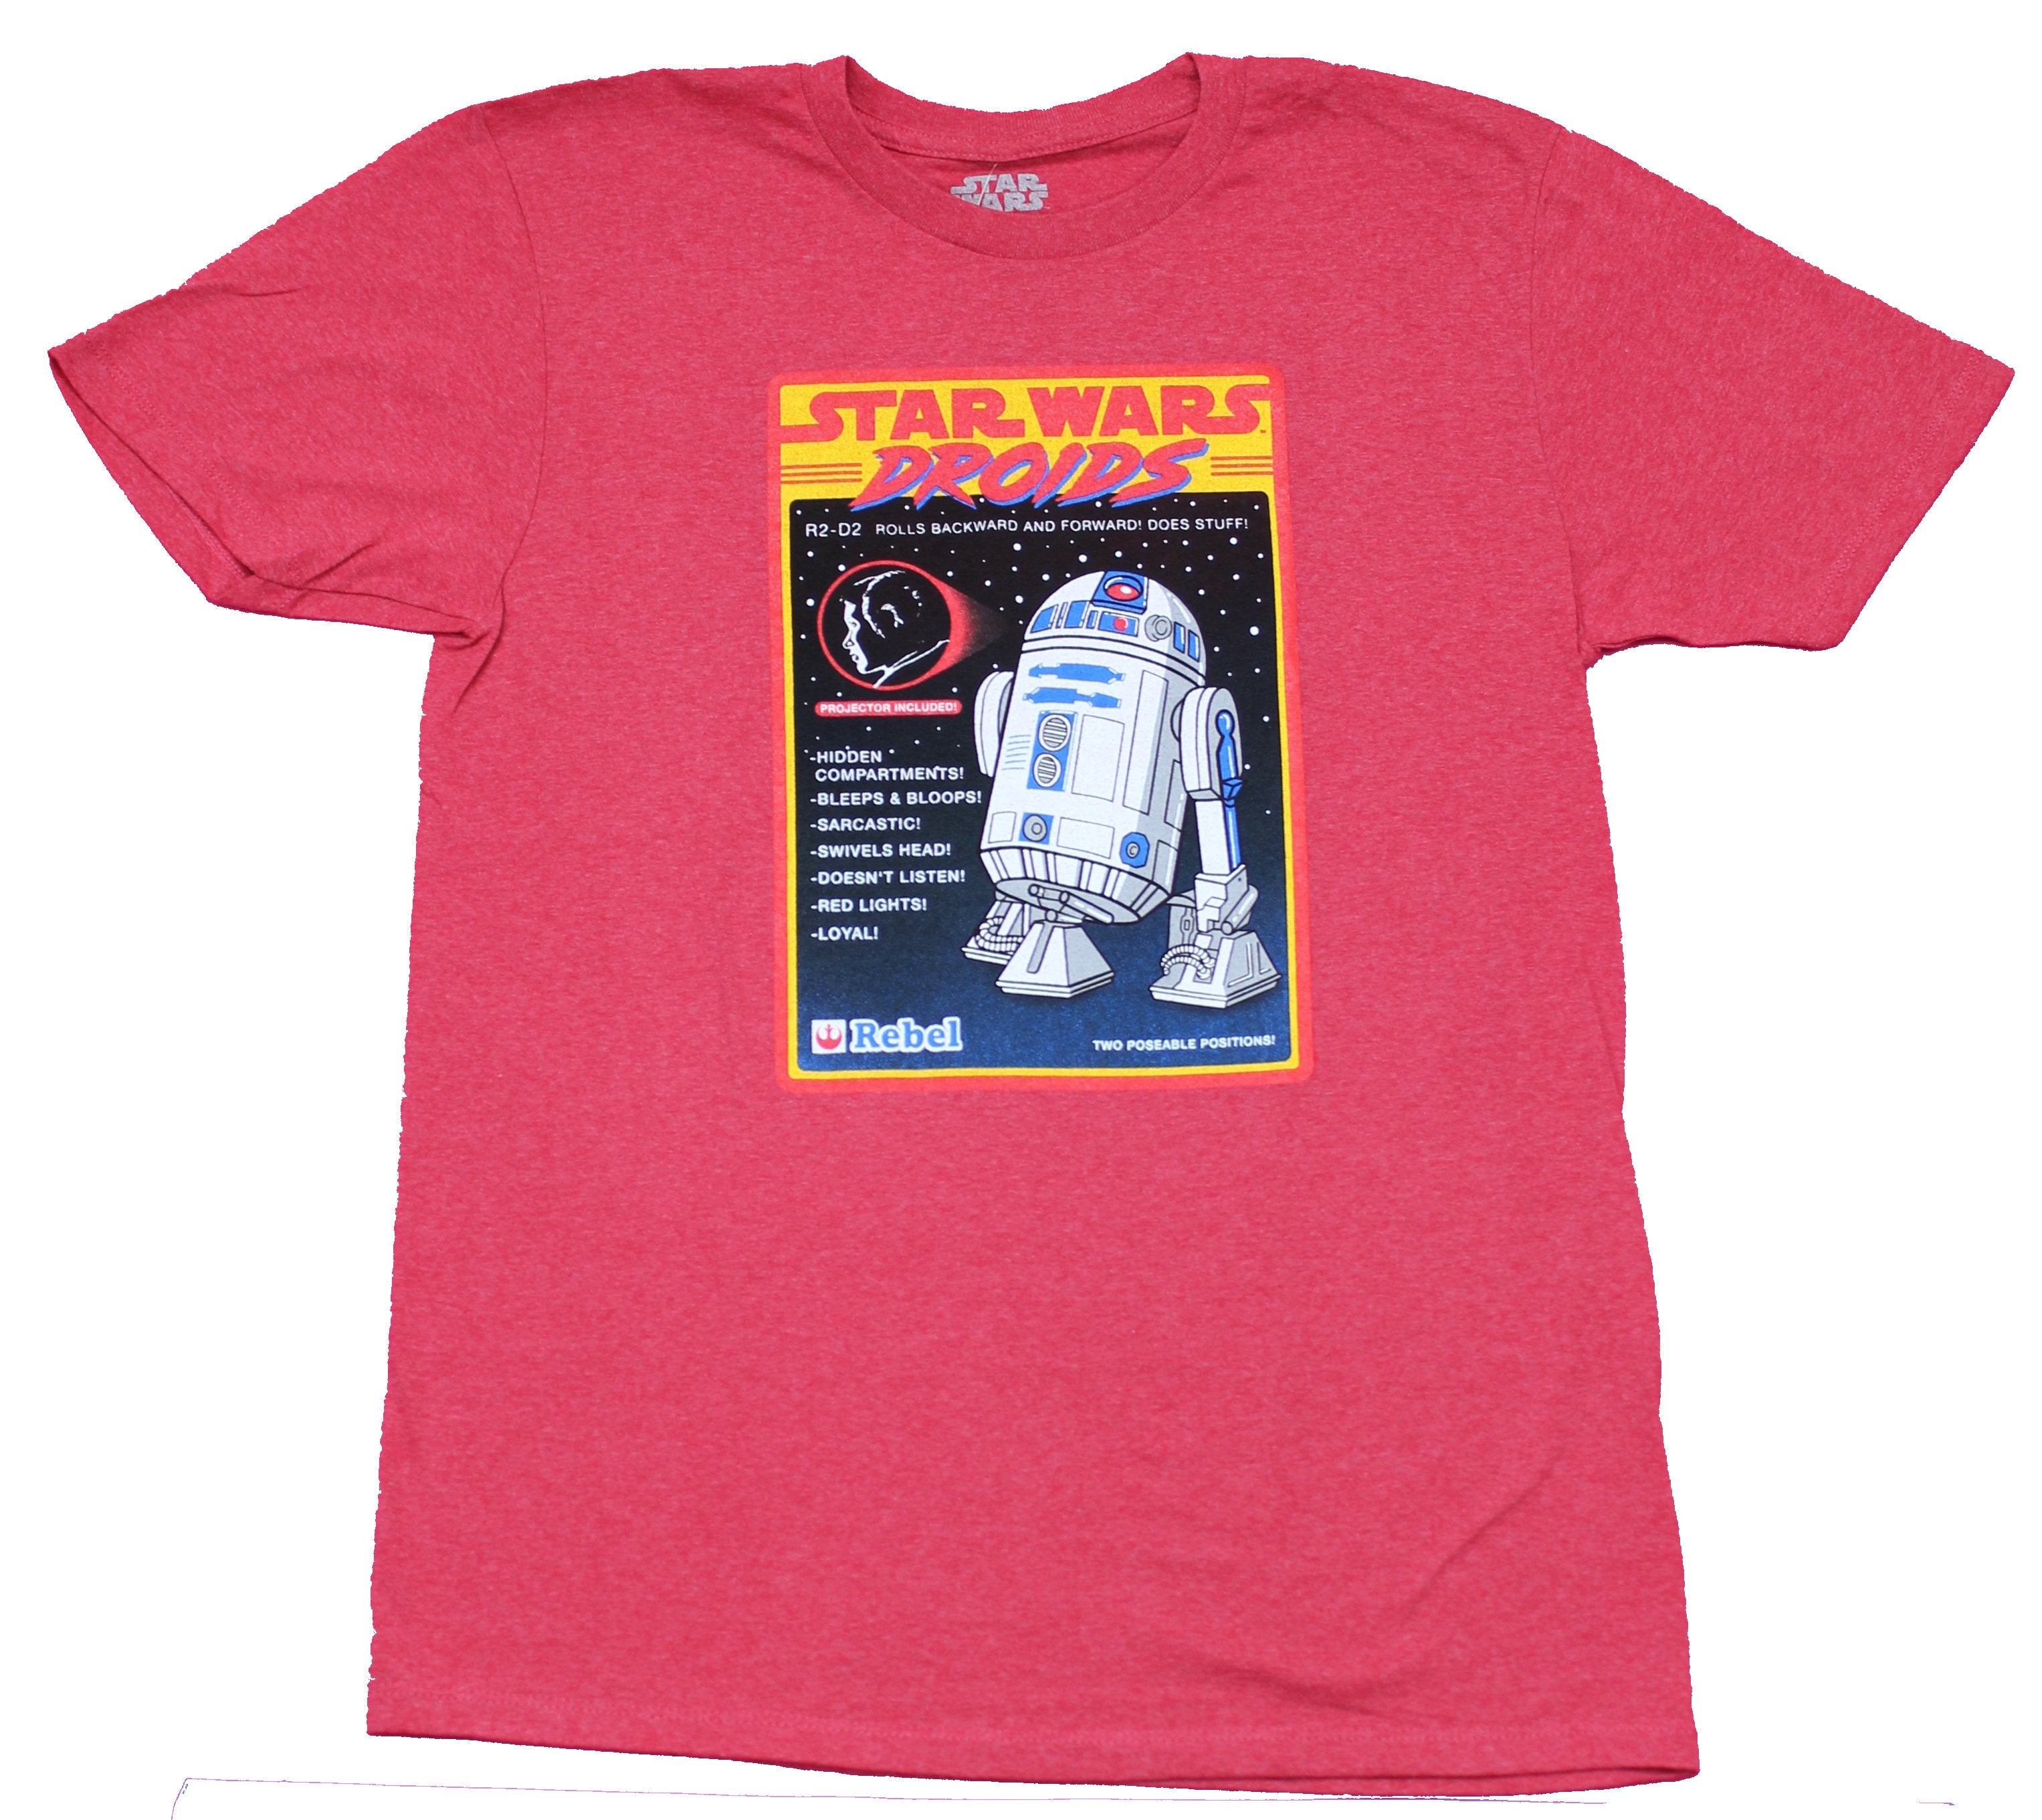 Bijwonen Ongedaan maken Uitstekend Star Wars Mens T-Shirt - Droids R2-D2 Action Figure Box Image